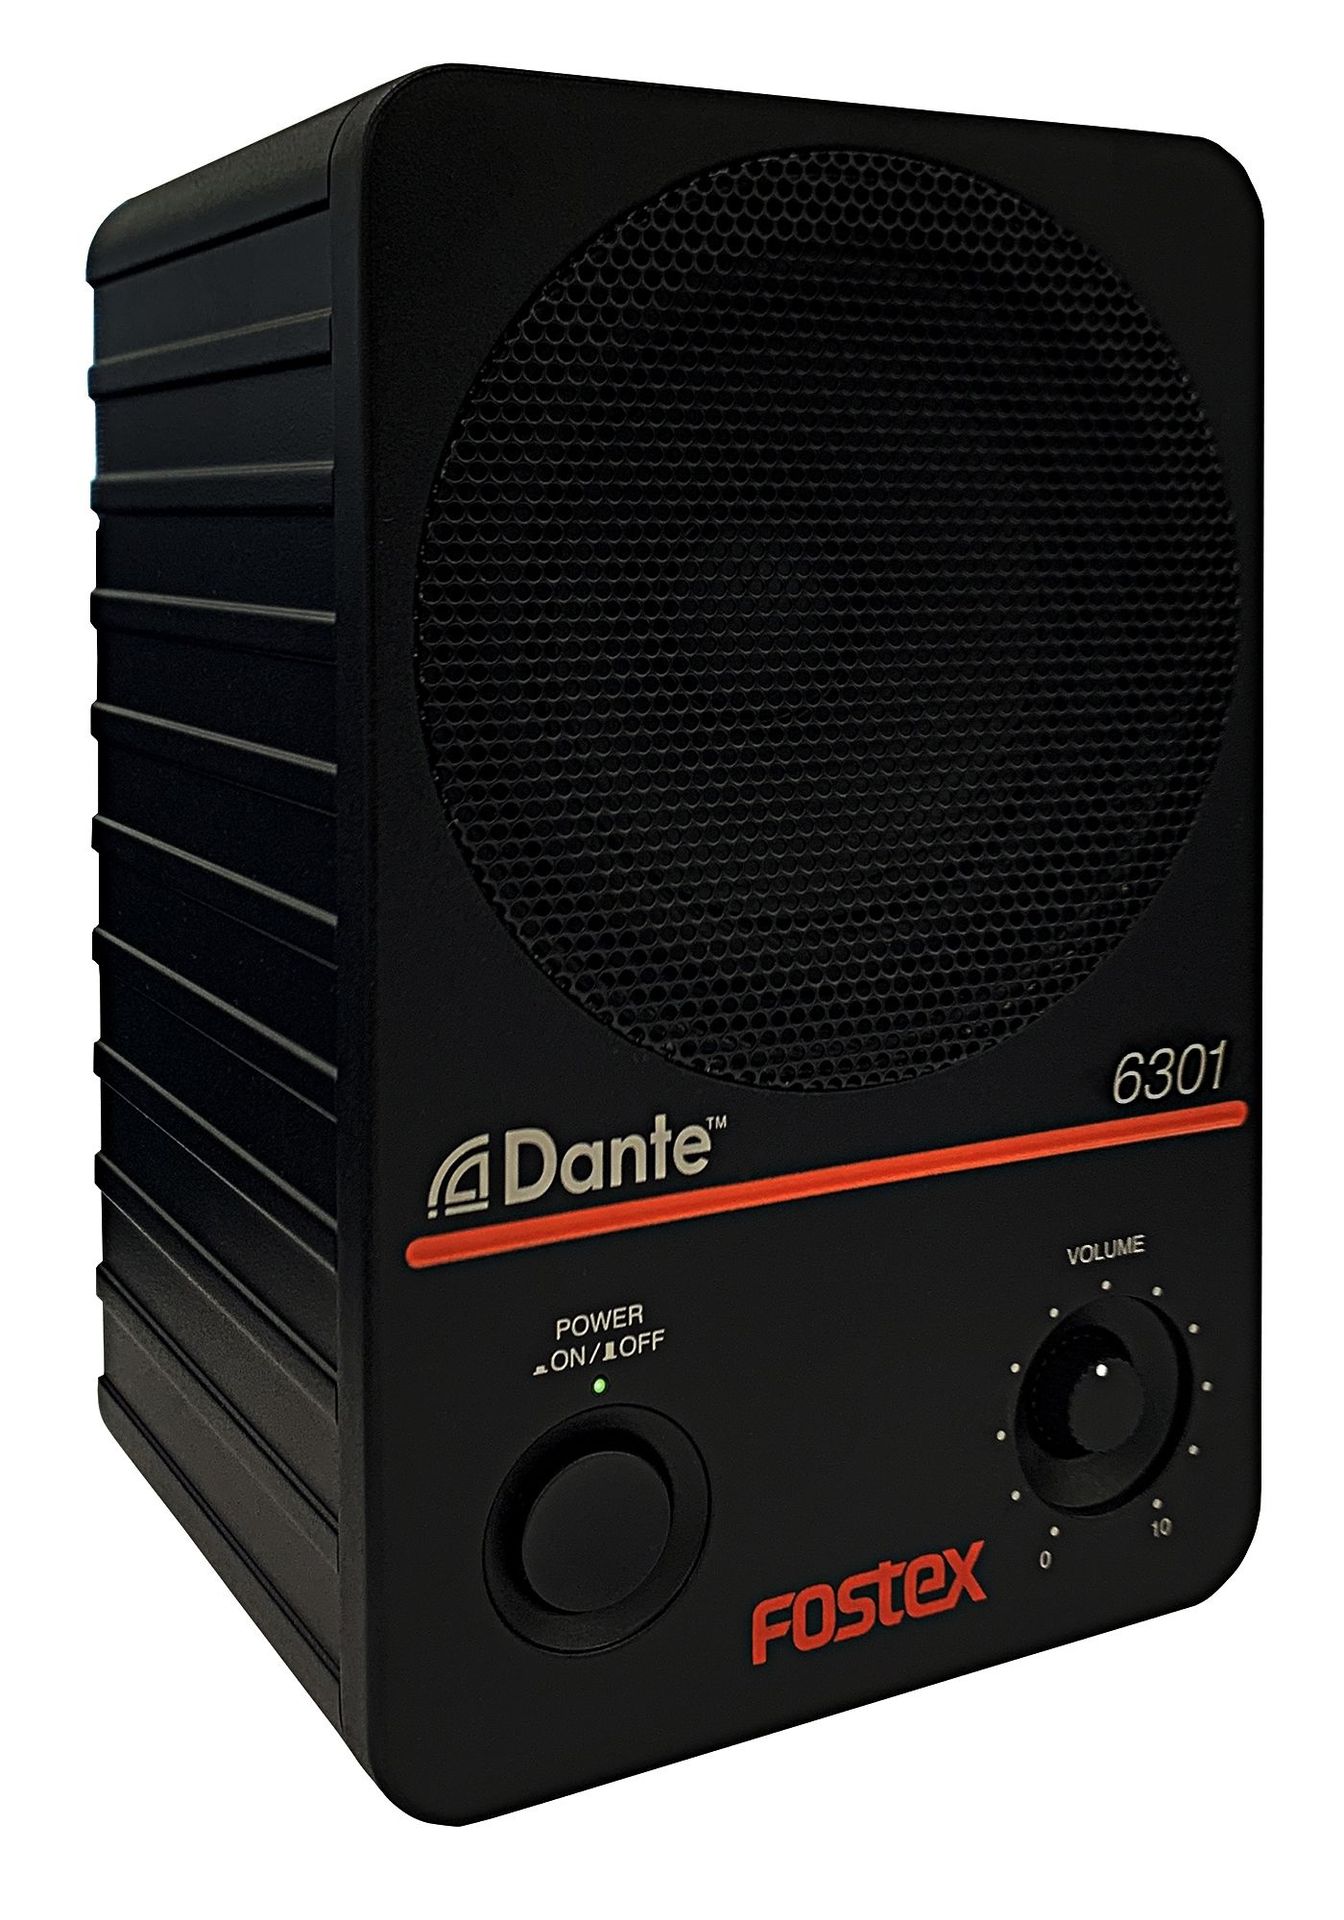 Fostex 6301DT Aktiver Monitor mit Dante-Schnittstelle